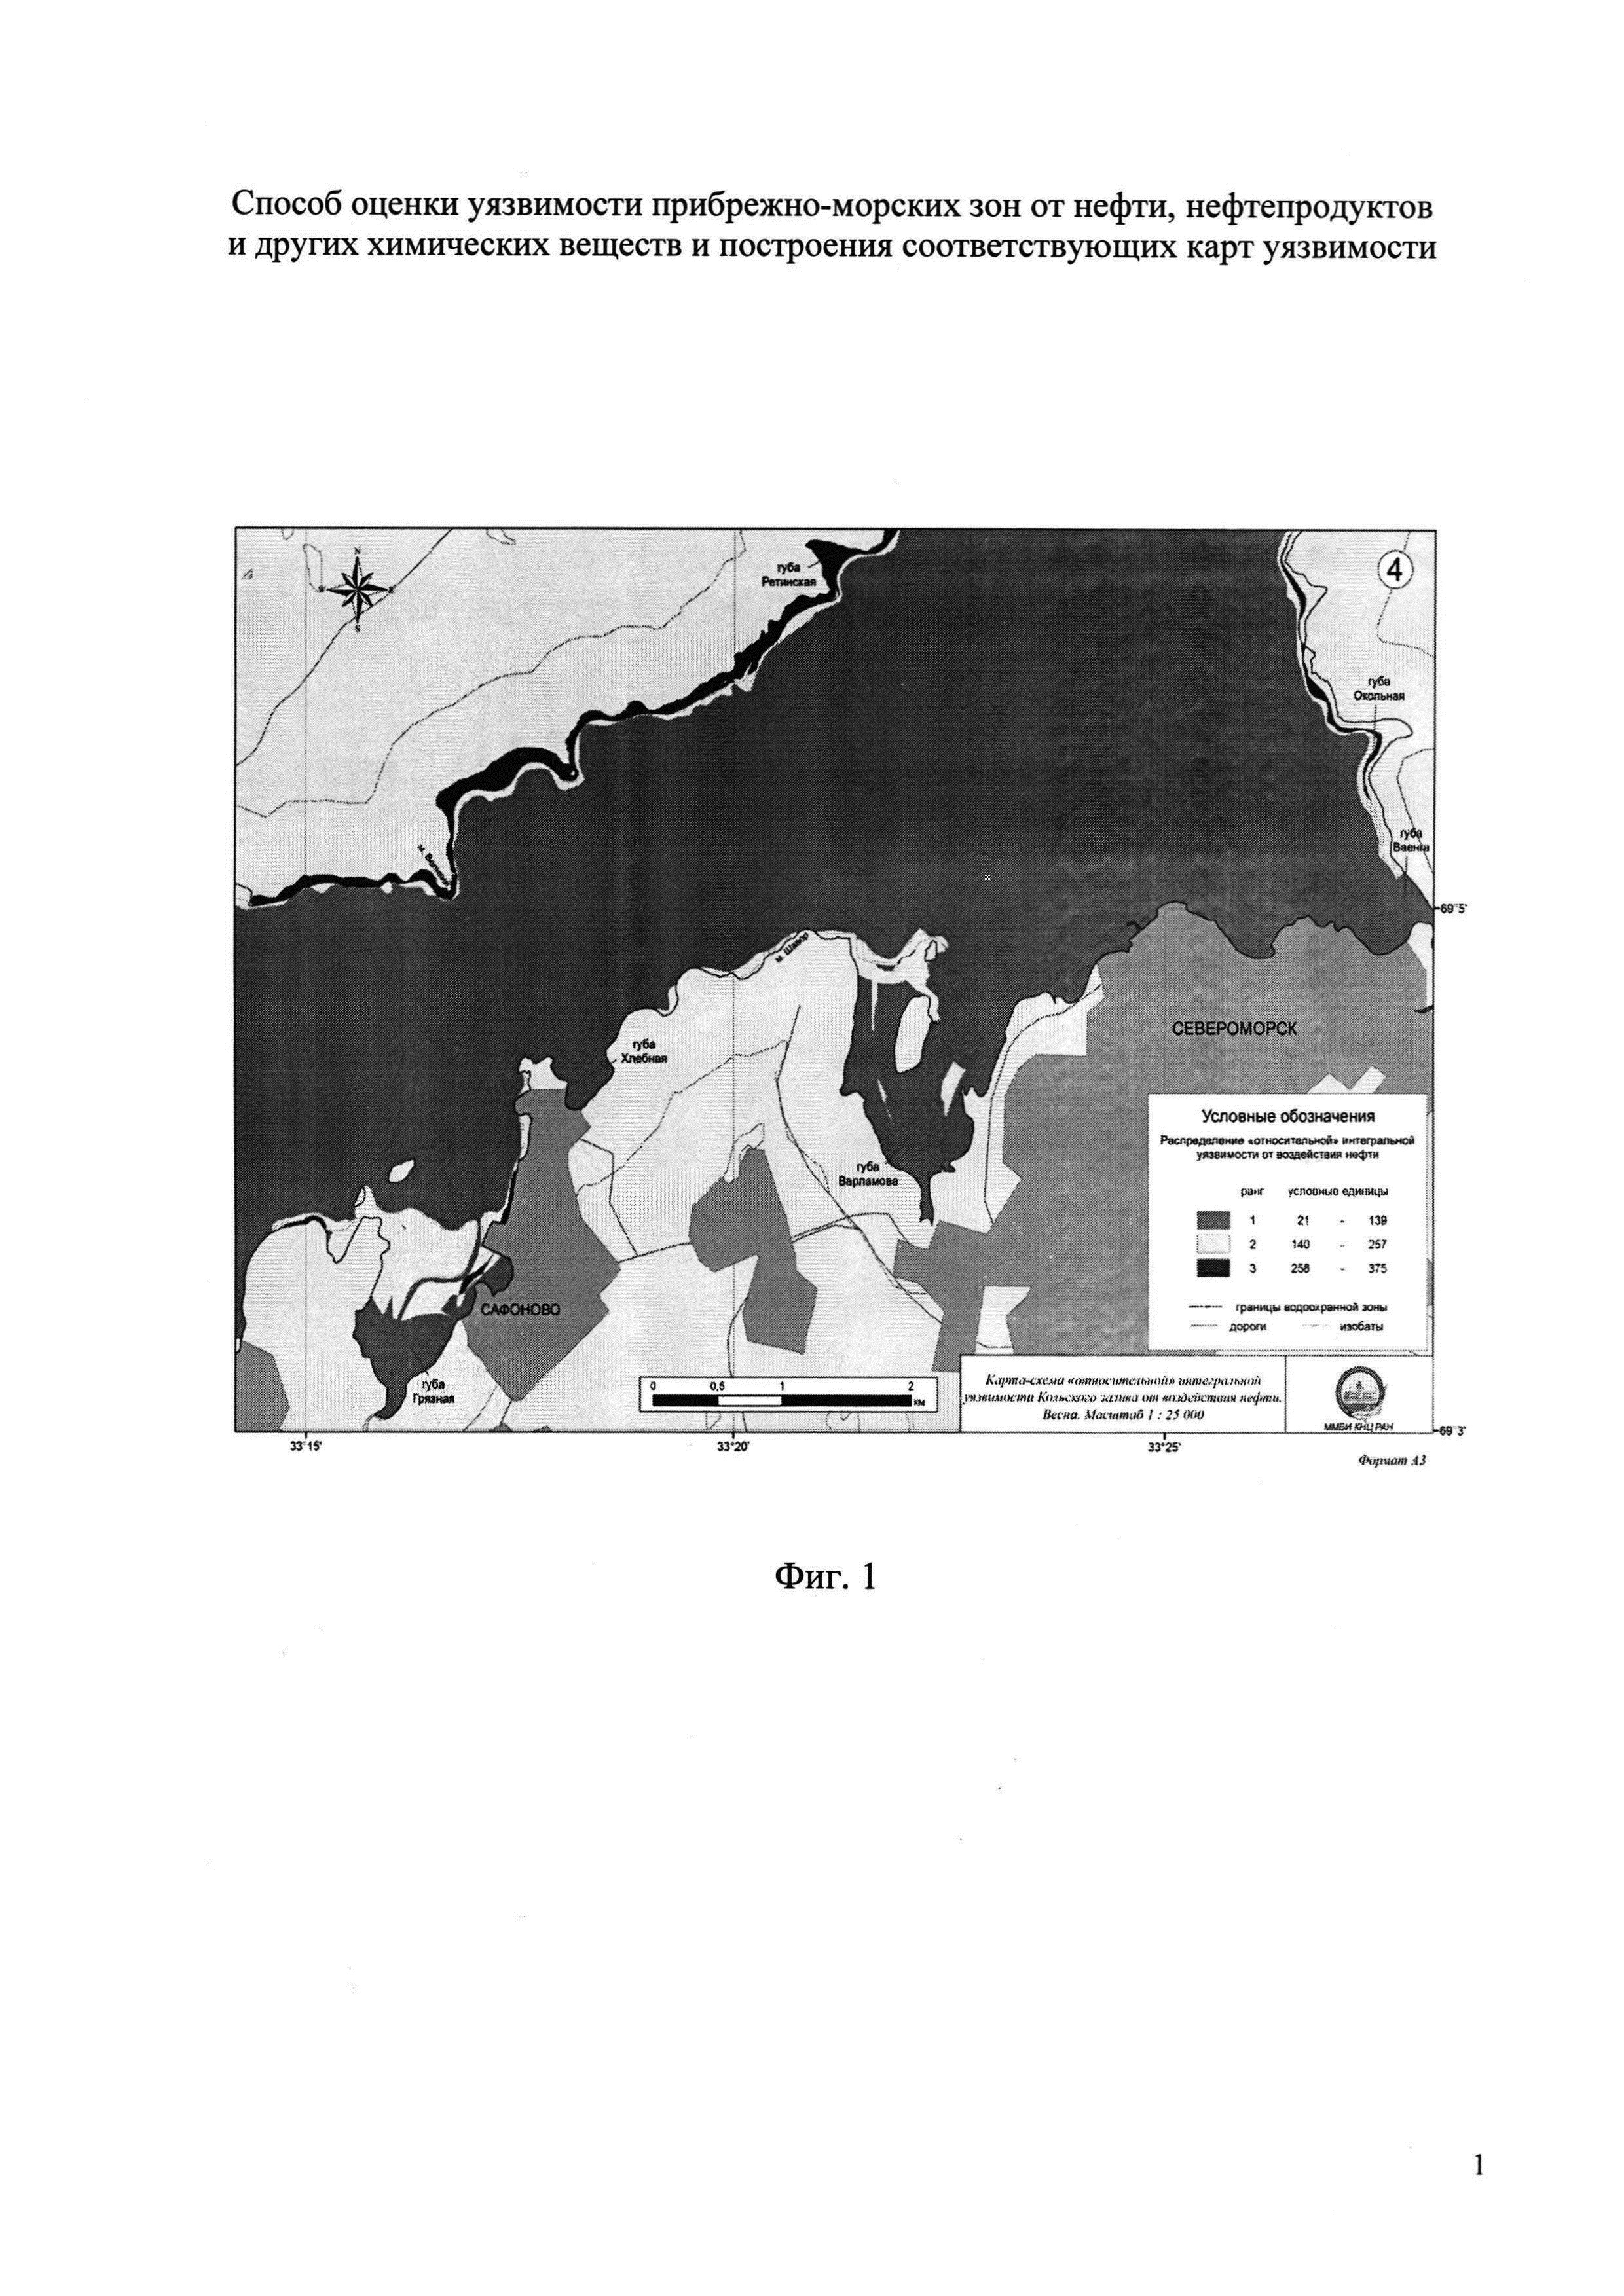 Способ построения карт уязвимости прибрежно-морских зон от нефти, нефтепродуктов и других химических веществ